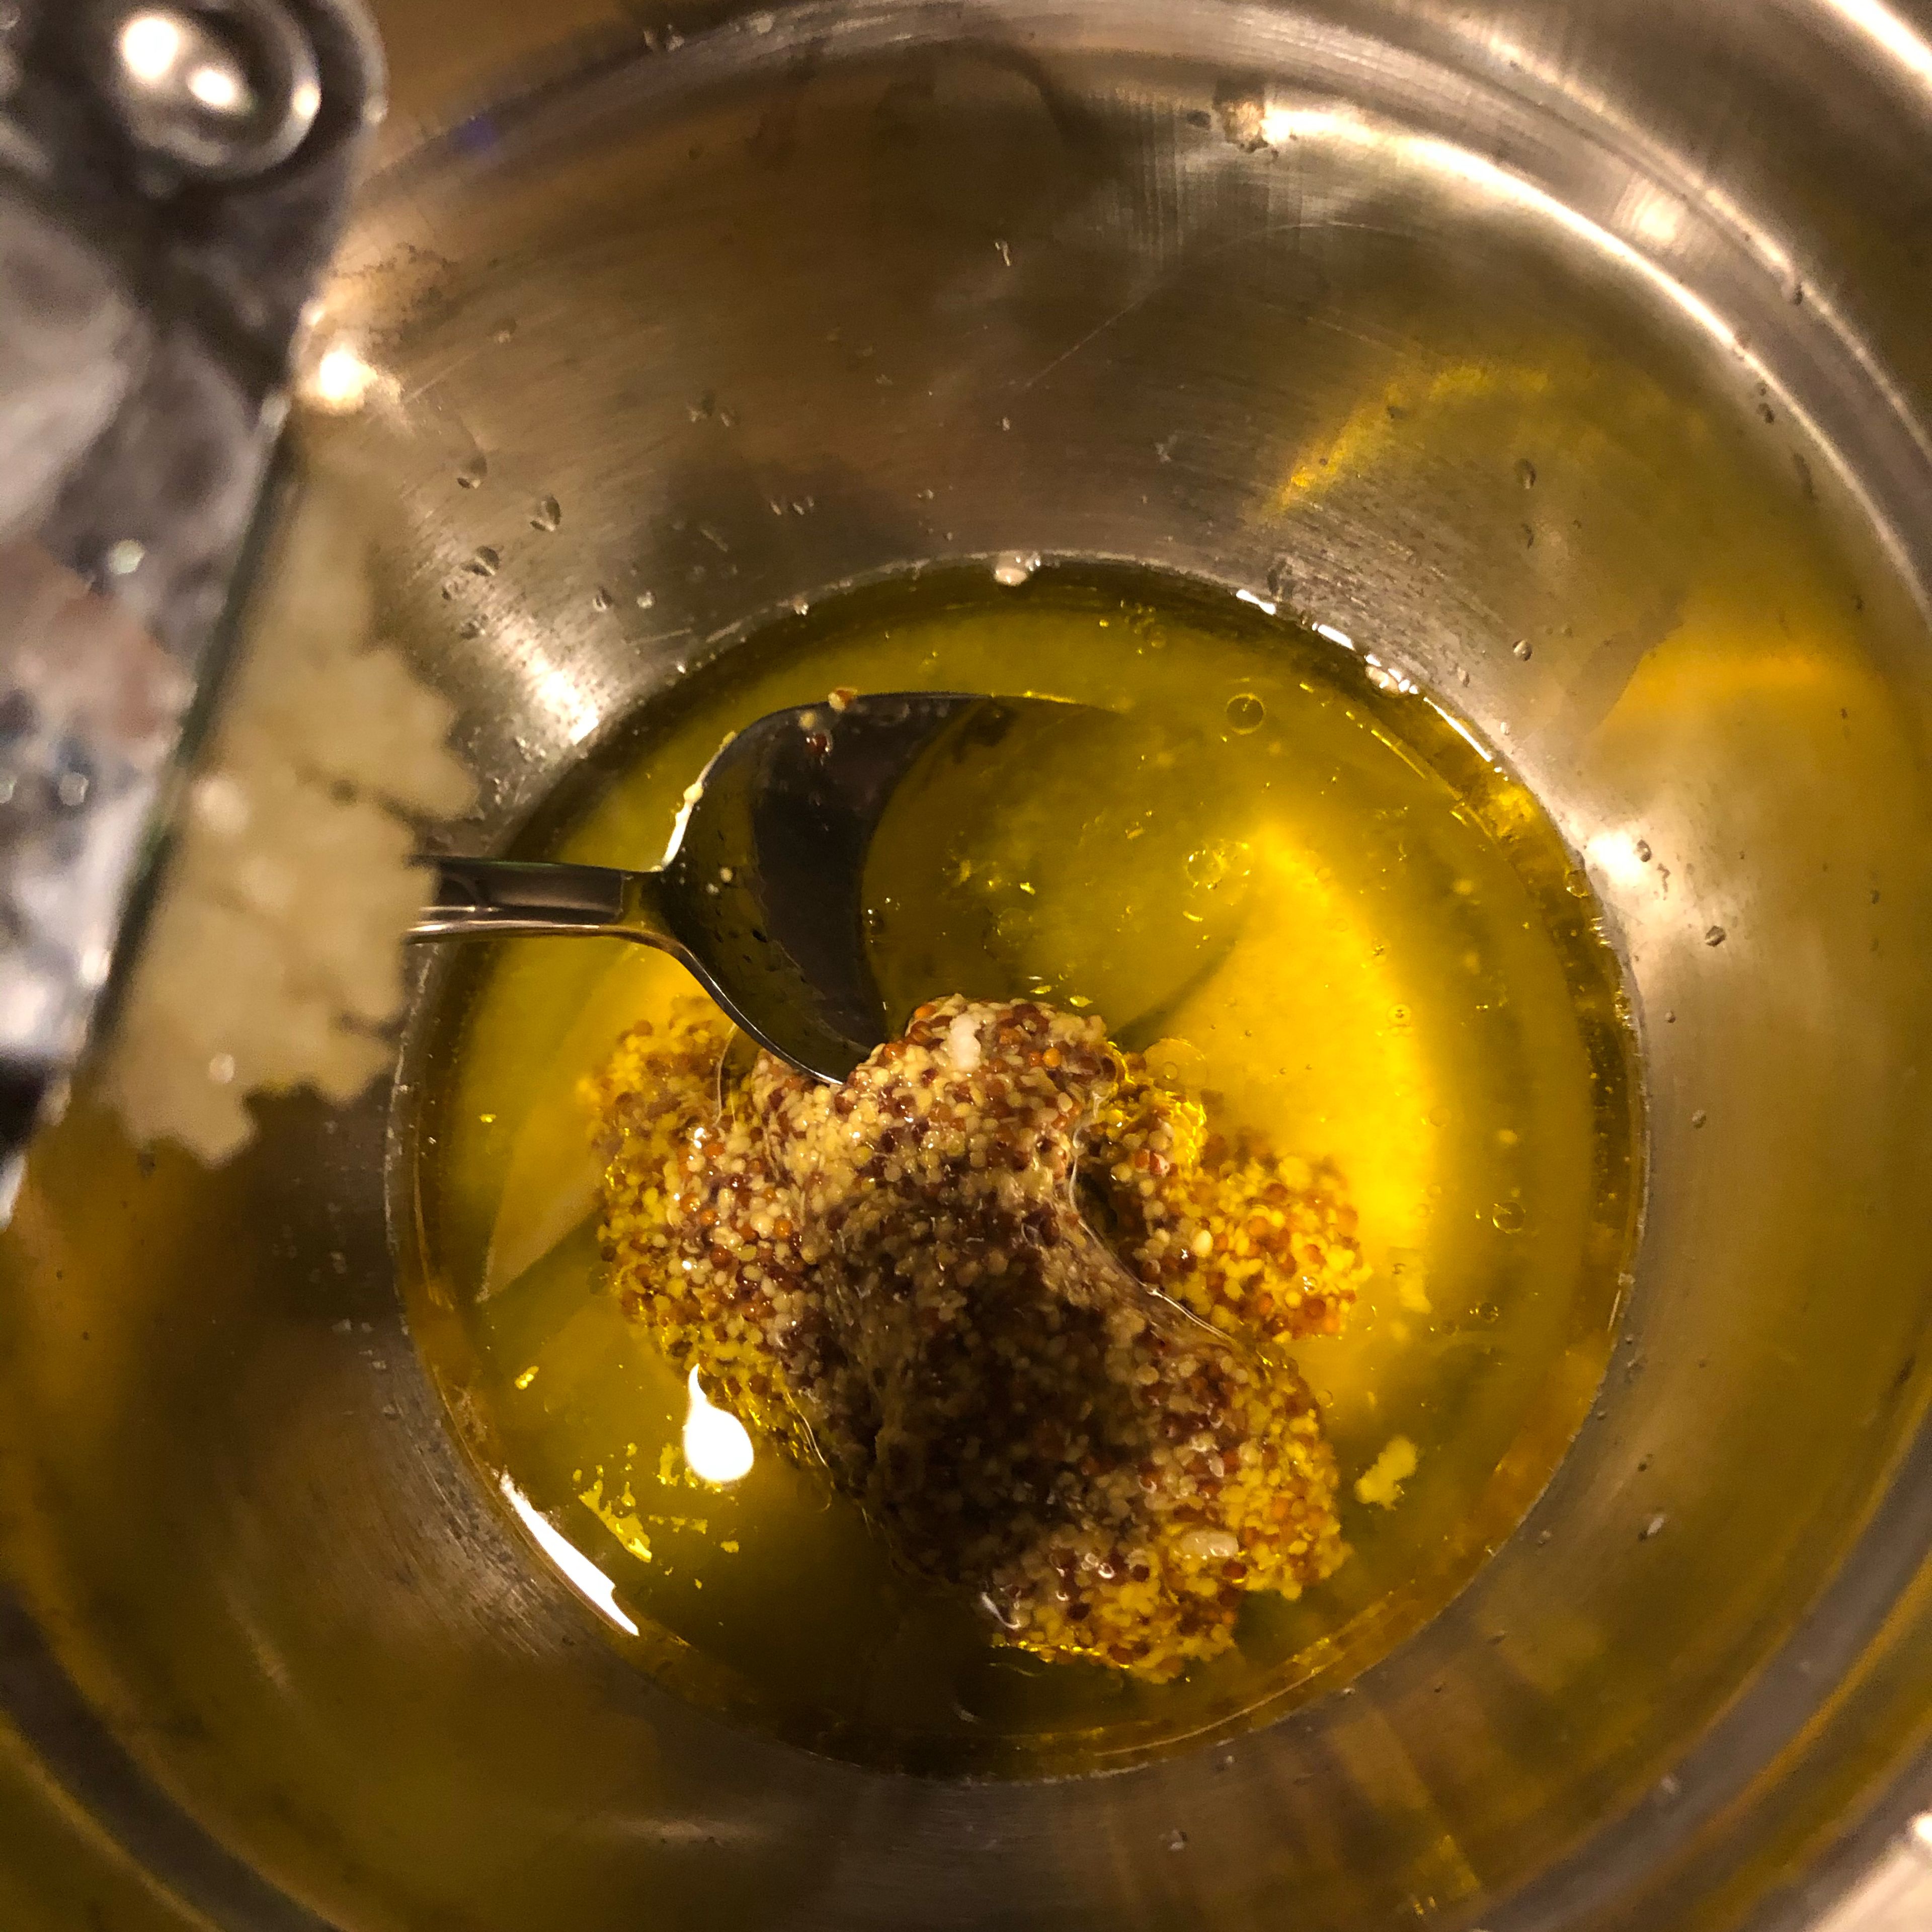 Das Dressing: In einer kleinen Schüssel Olivenöl, Zitronensaft, Senf, Honig vermengen. Knoblauch hineinpressen. Miteinander vermengen.